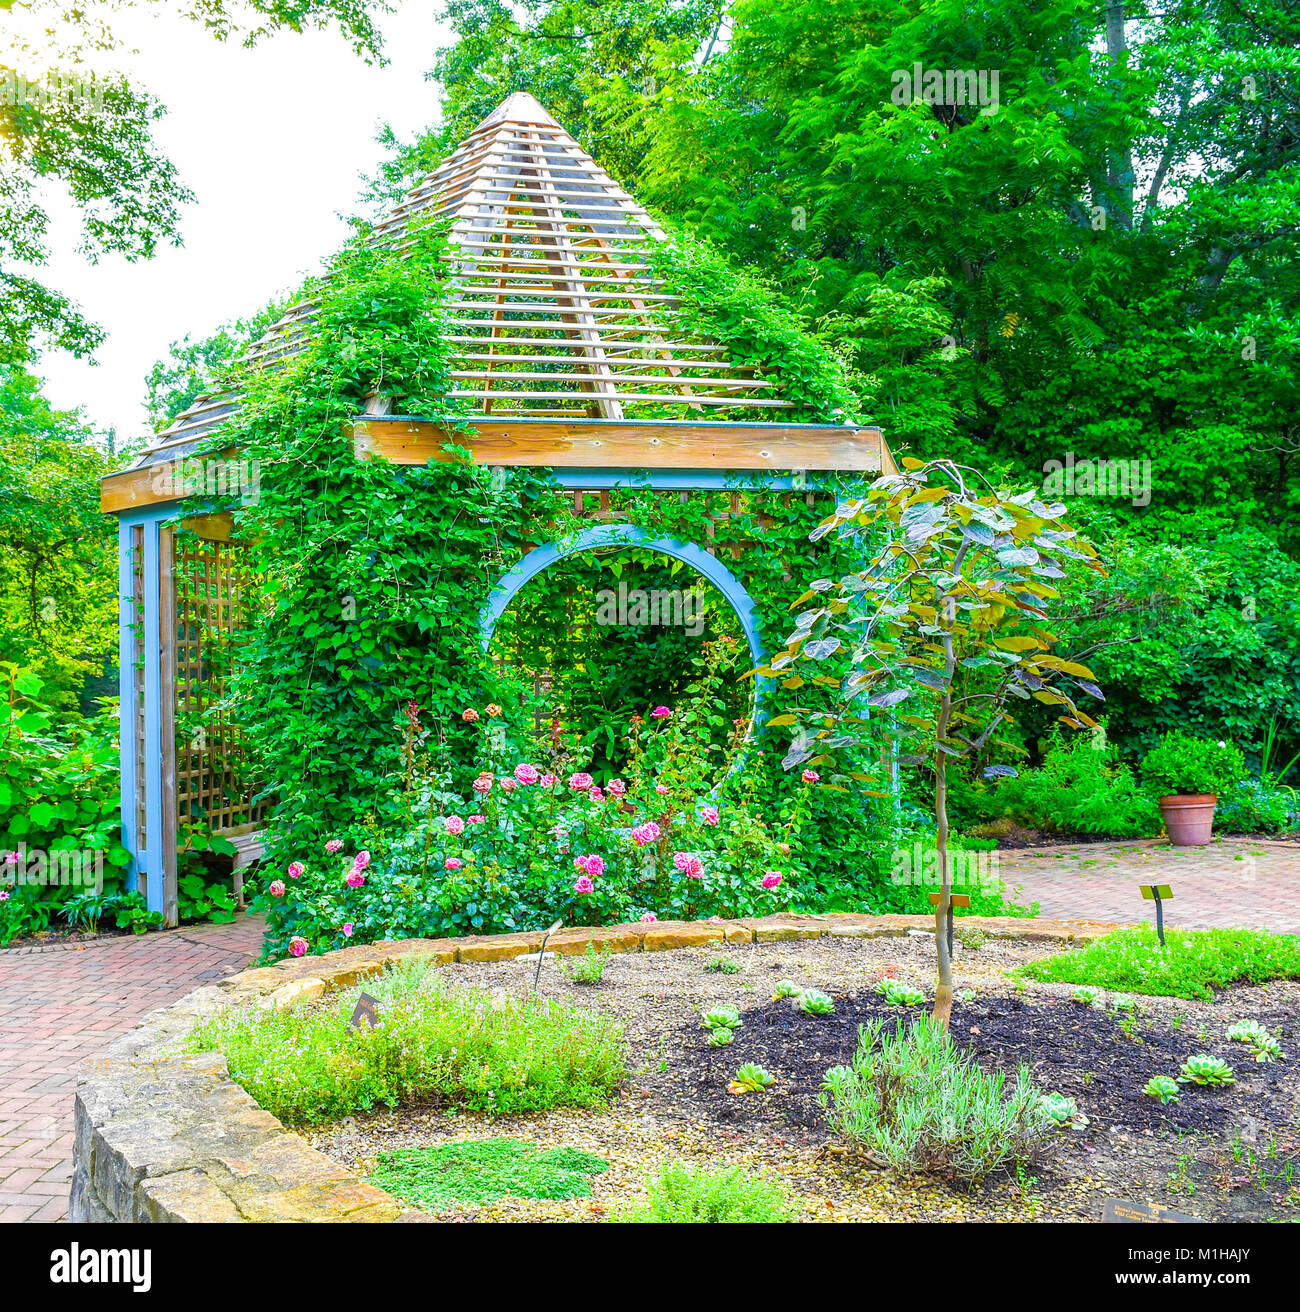 In der Mitte von einem schönen Garten befindet sich ein Pavillon. Üppige Landschaft umgibt den Garten. Stockfoto